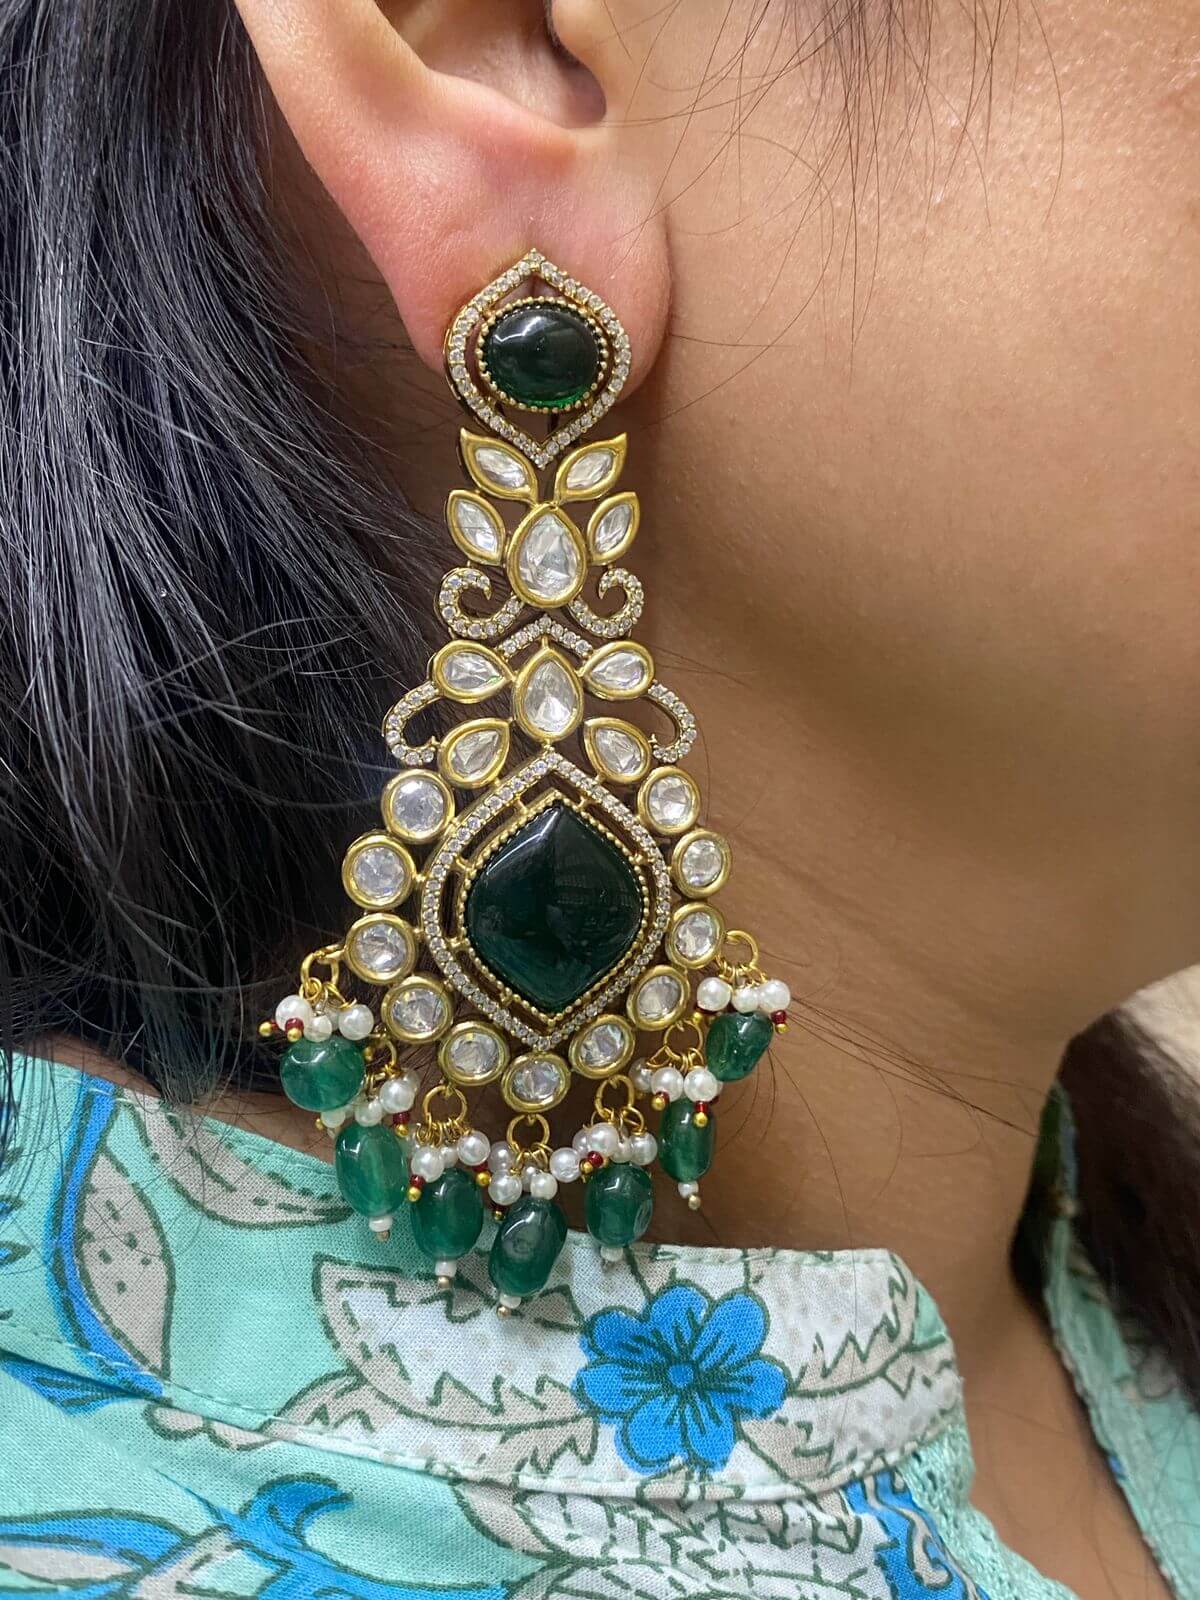 Buy quality 22k Gold Diamond Ladies Earrings in Ahmedabad